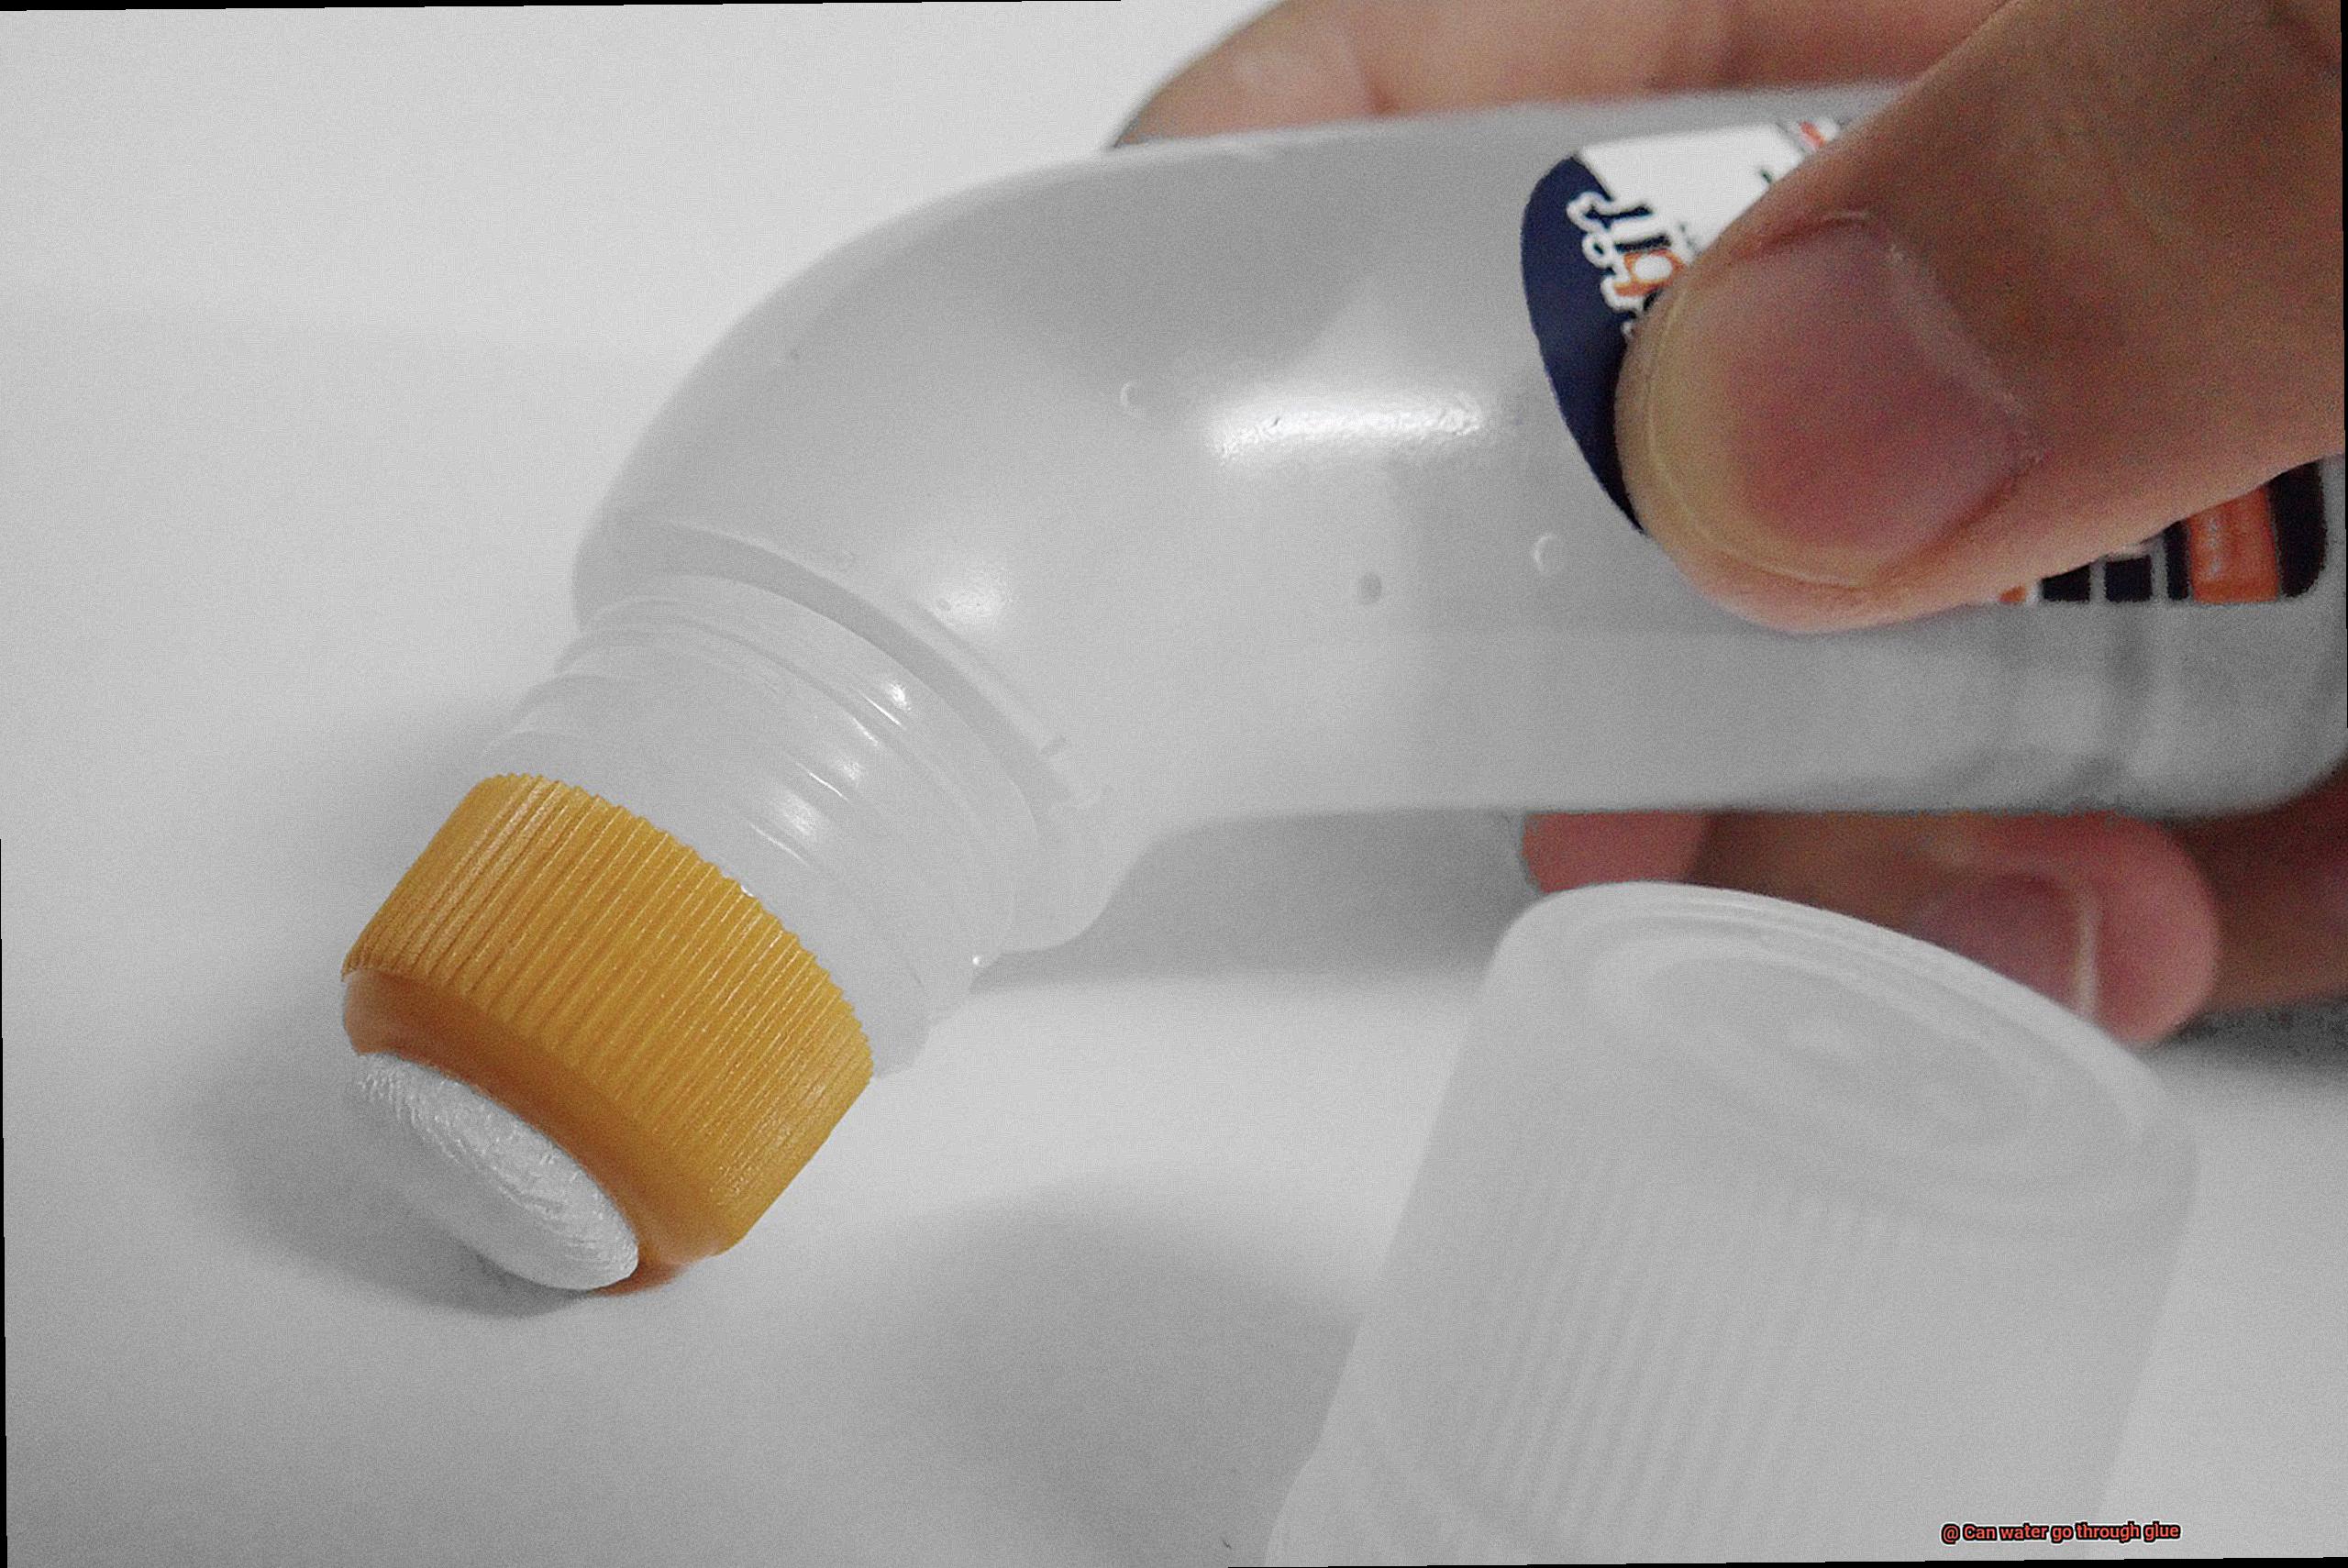 Can water go through glue-4